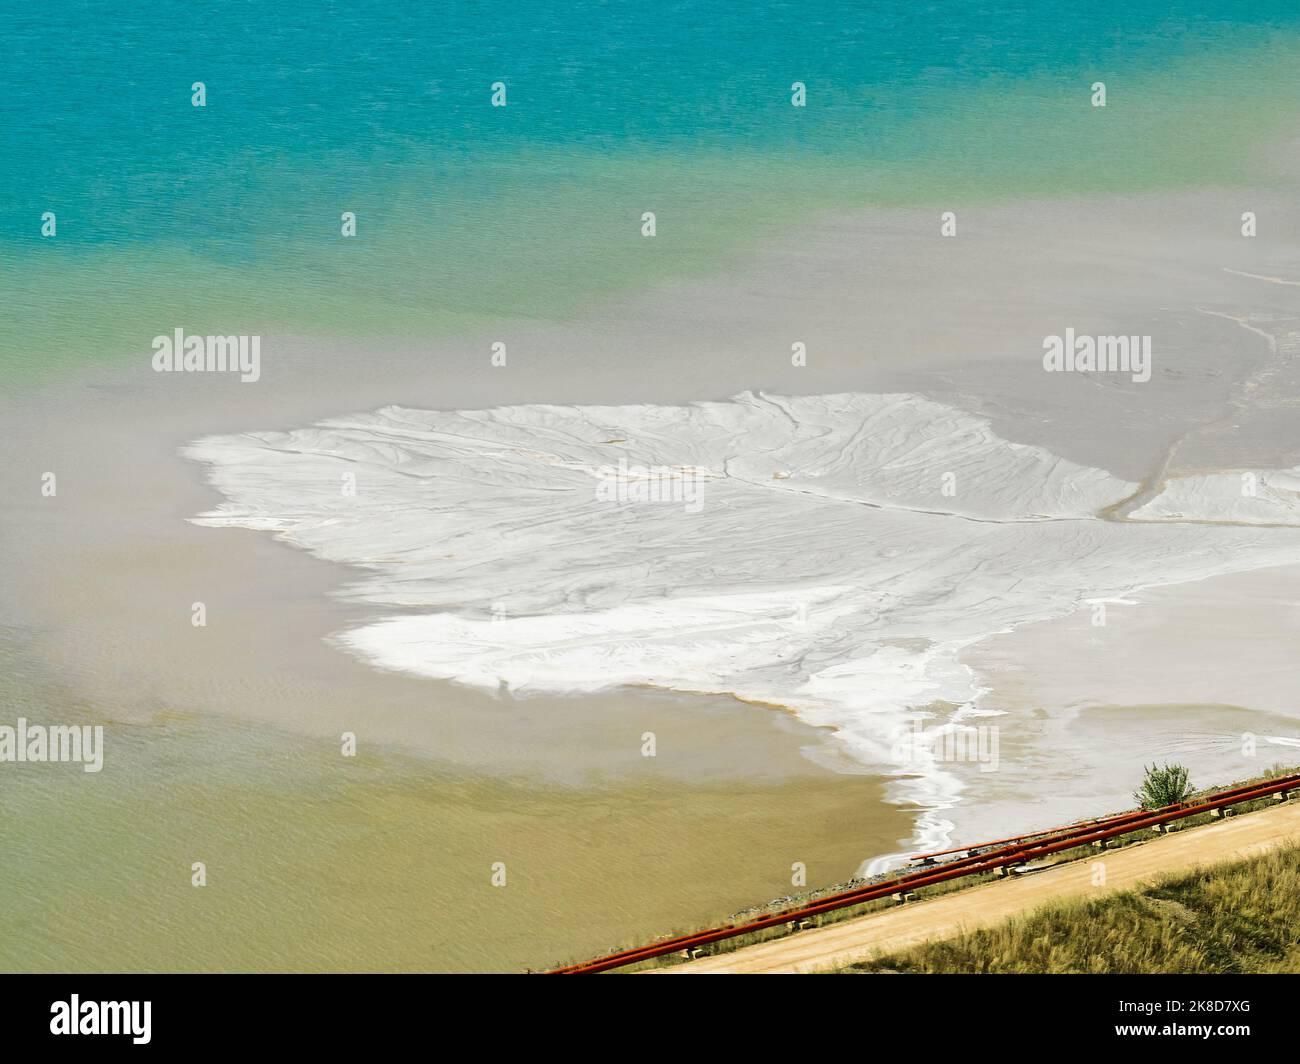 Einweichen von Salz- und Sandgemisch in beleuchteten Salzlappen Stockfoto